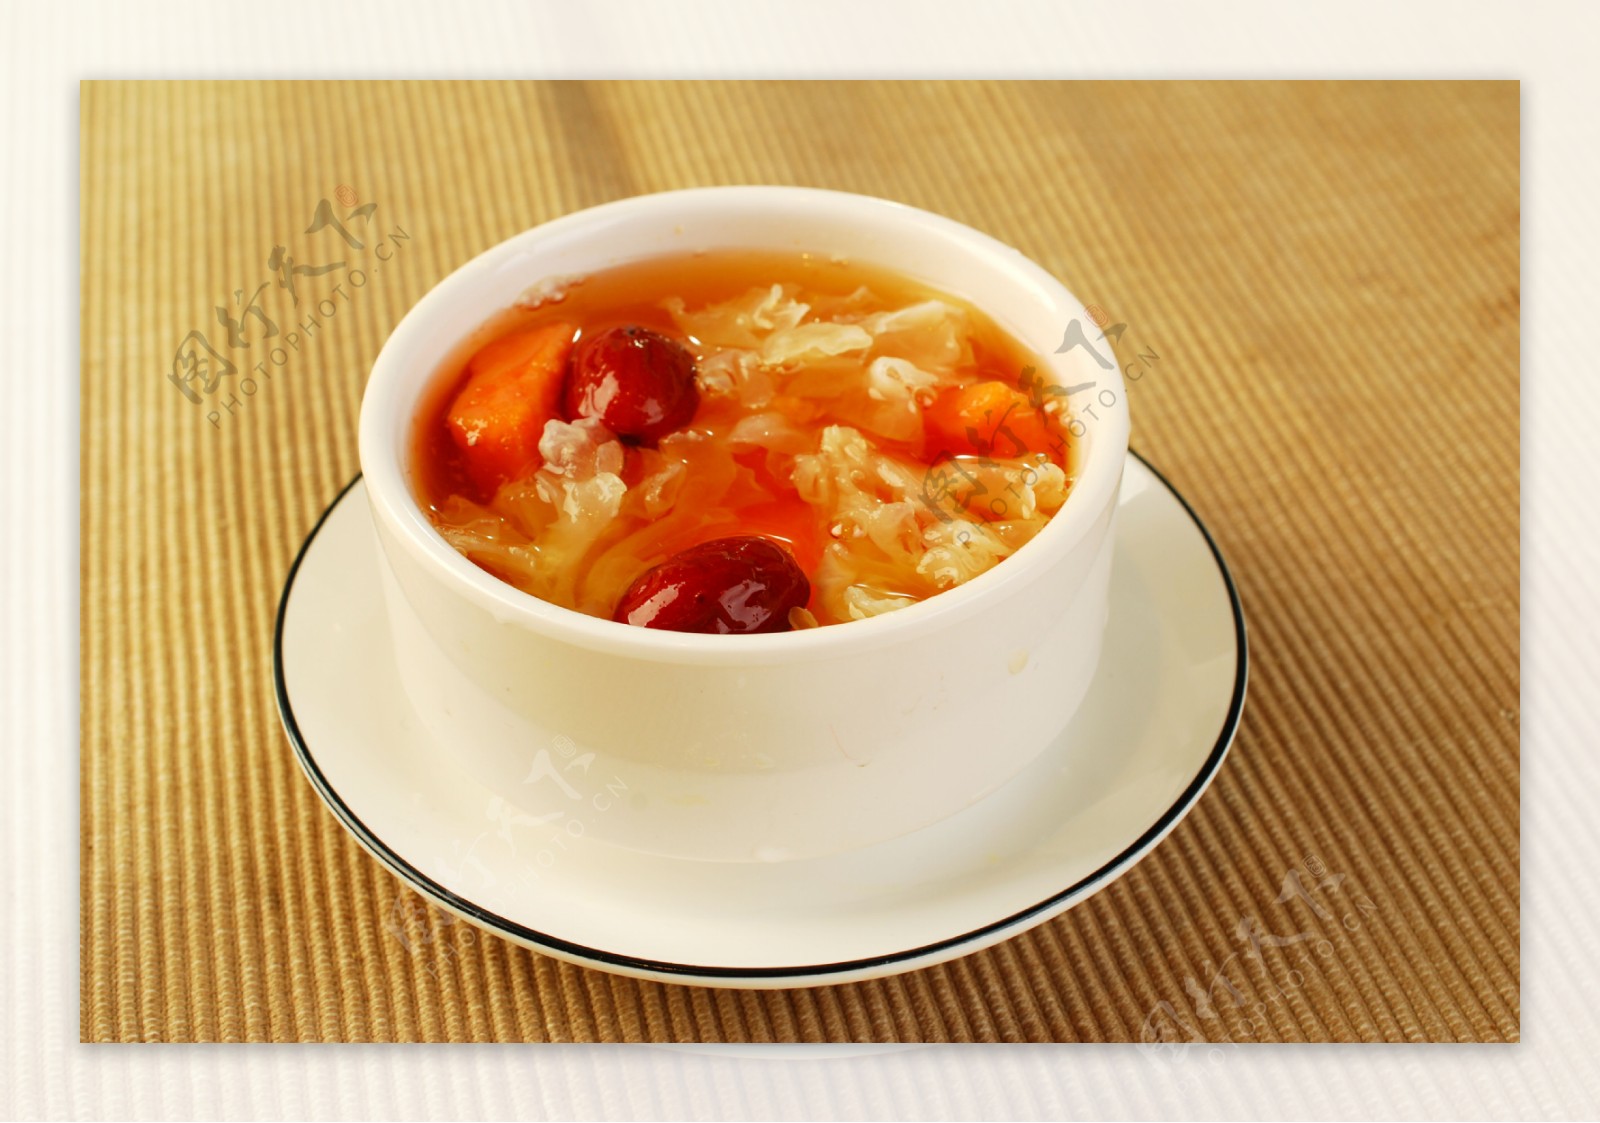 雪耳蓮子百合糖水食譜、做法 | YeungMa的Cook1Cook食譜分享